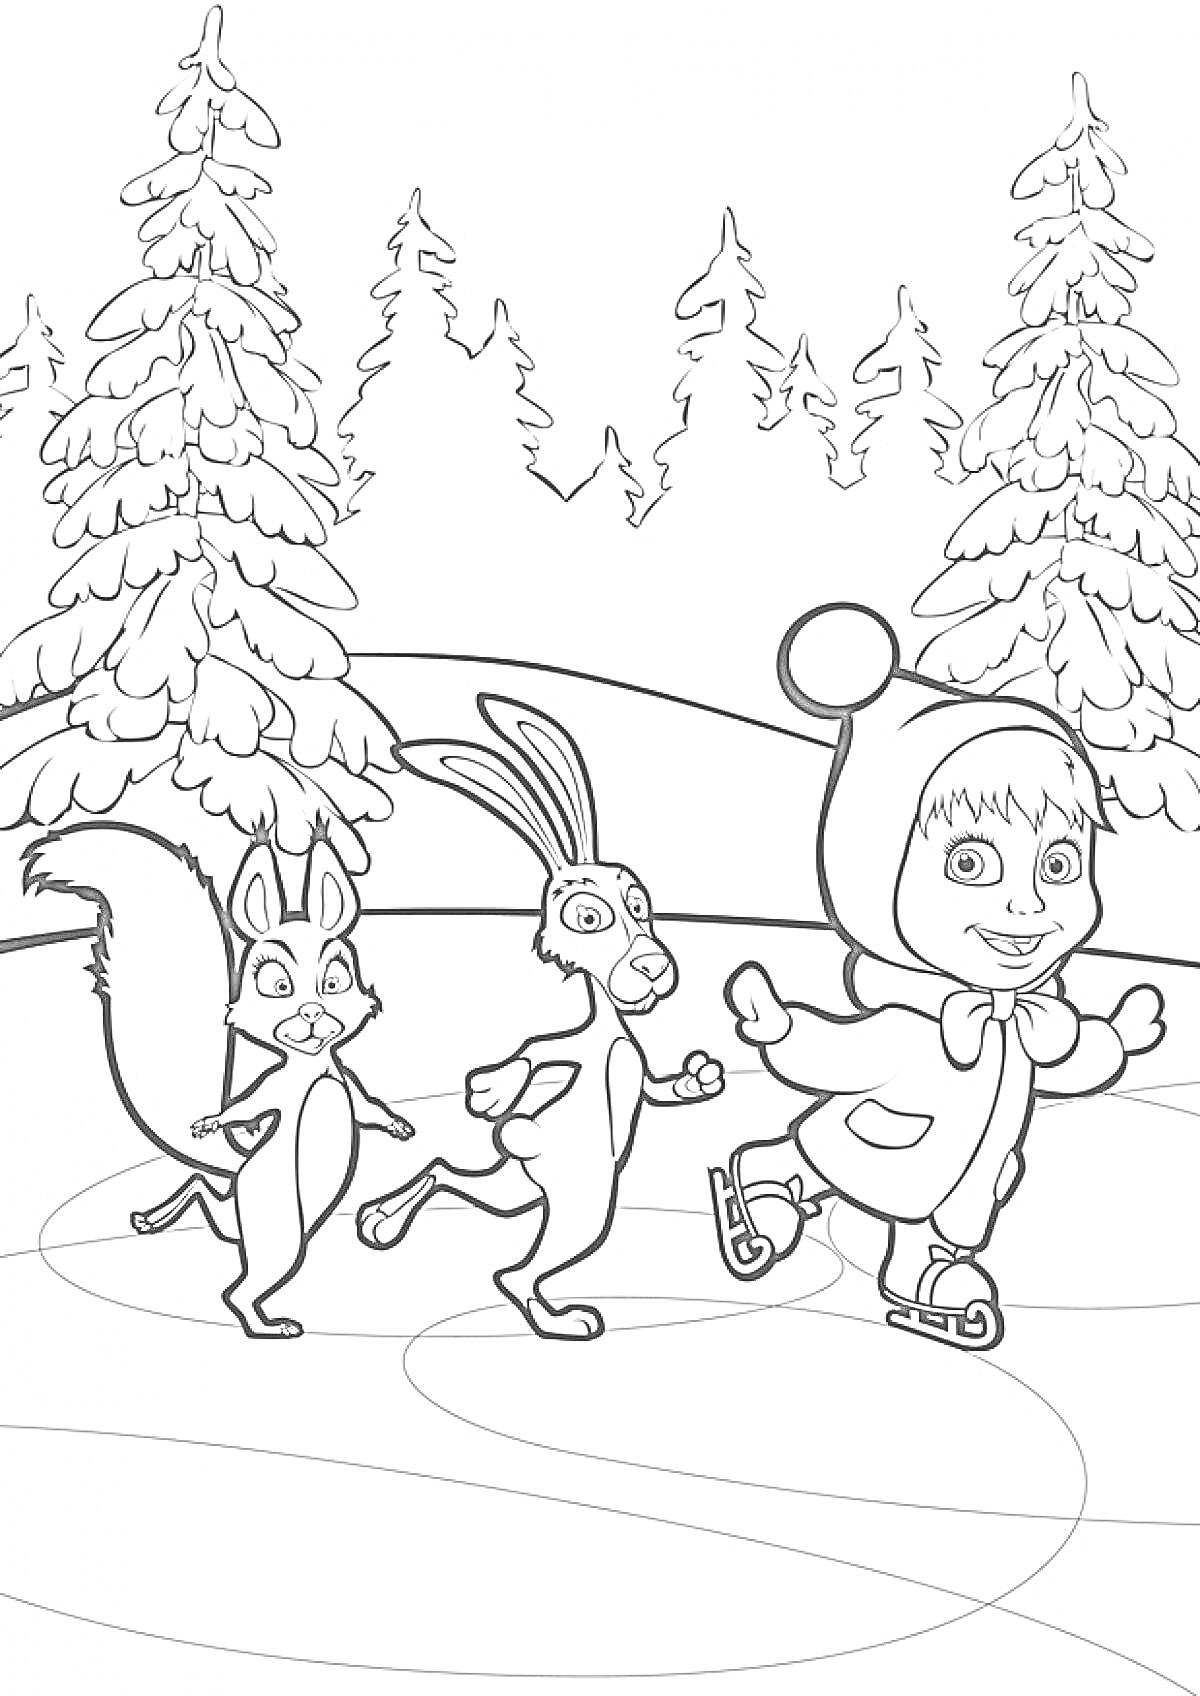 Дети и животные на коньках в лесу, ель, белка, заяц, ребенок в шапке